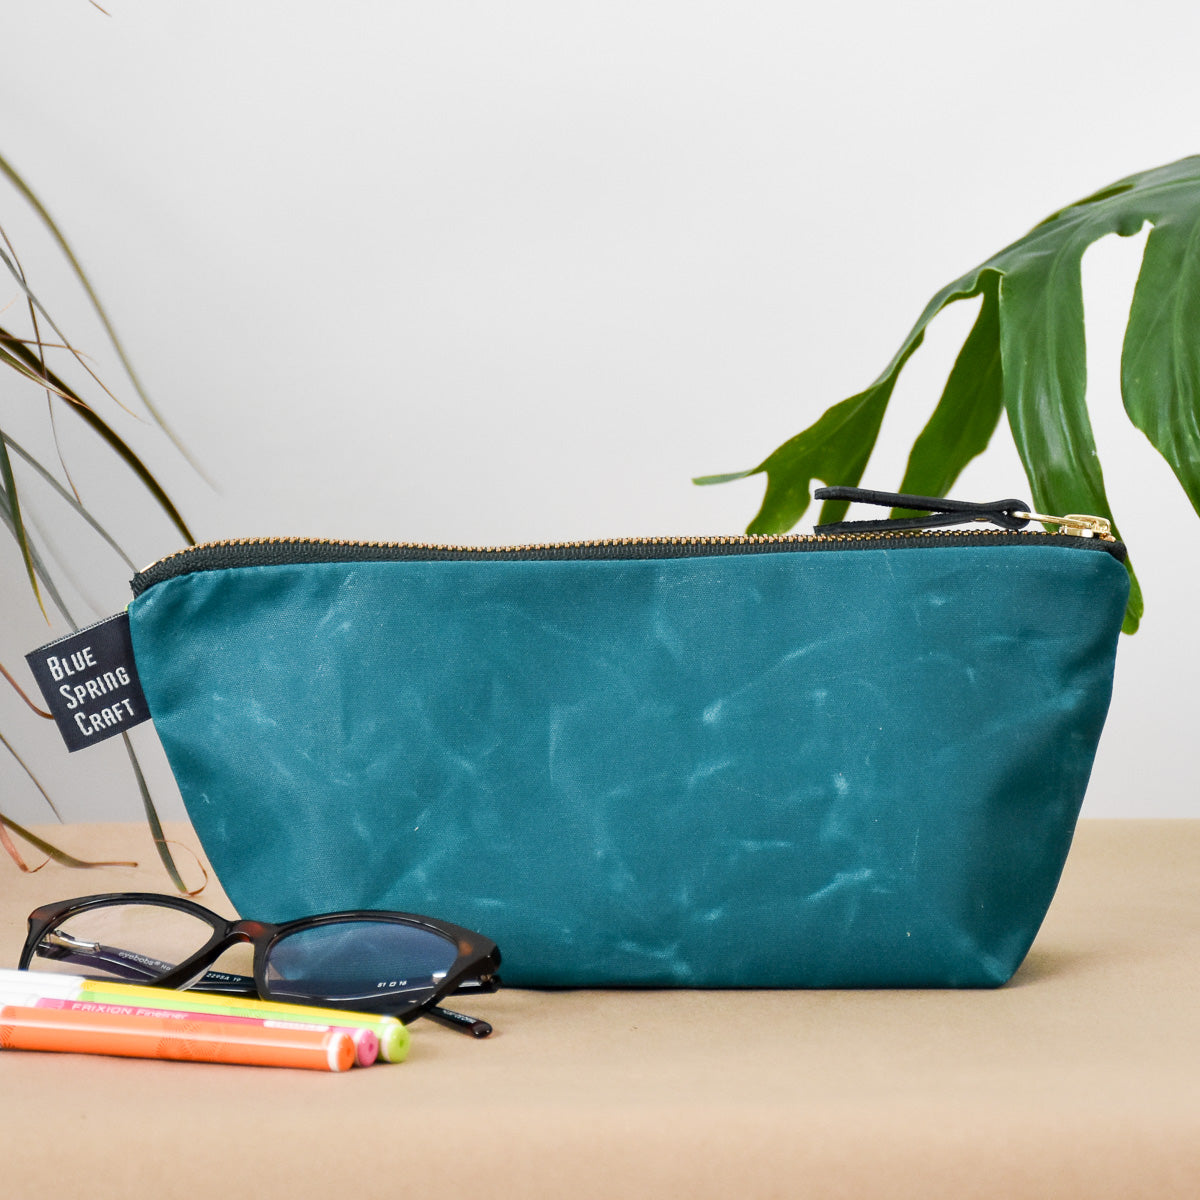 Kiwi and Teal Bag No. 1 - The Essentials Bag